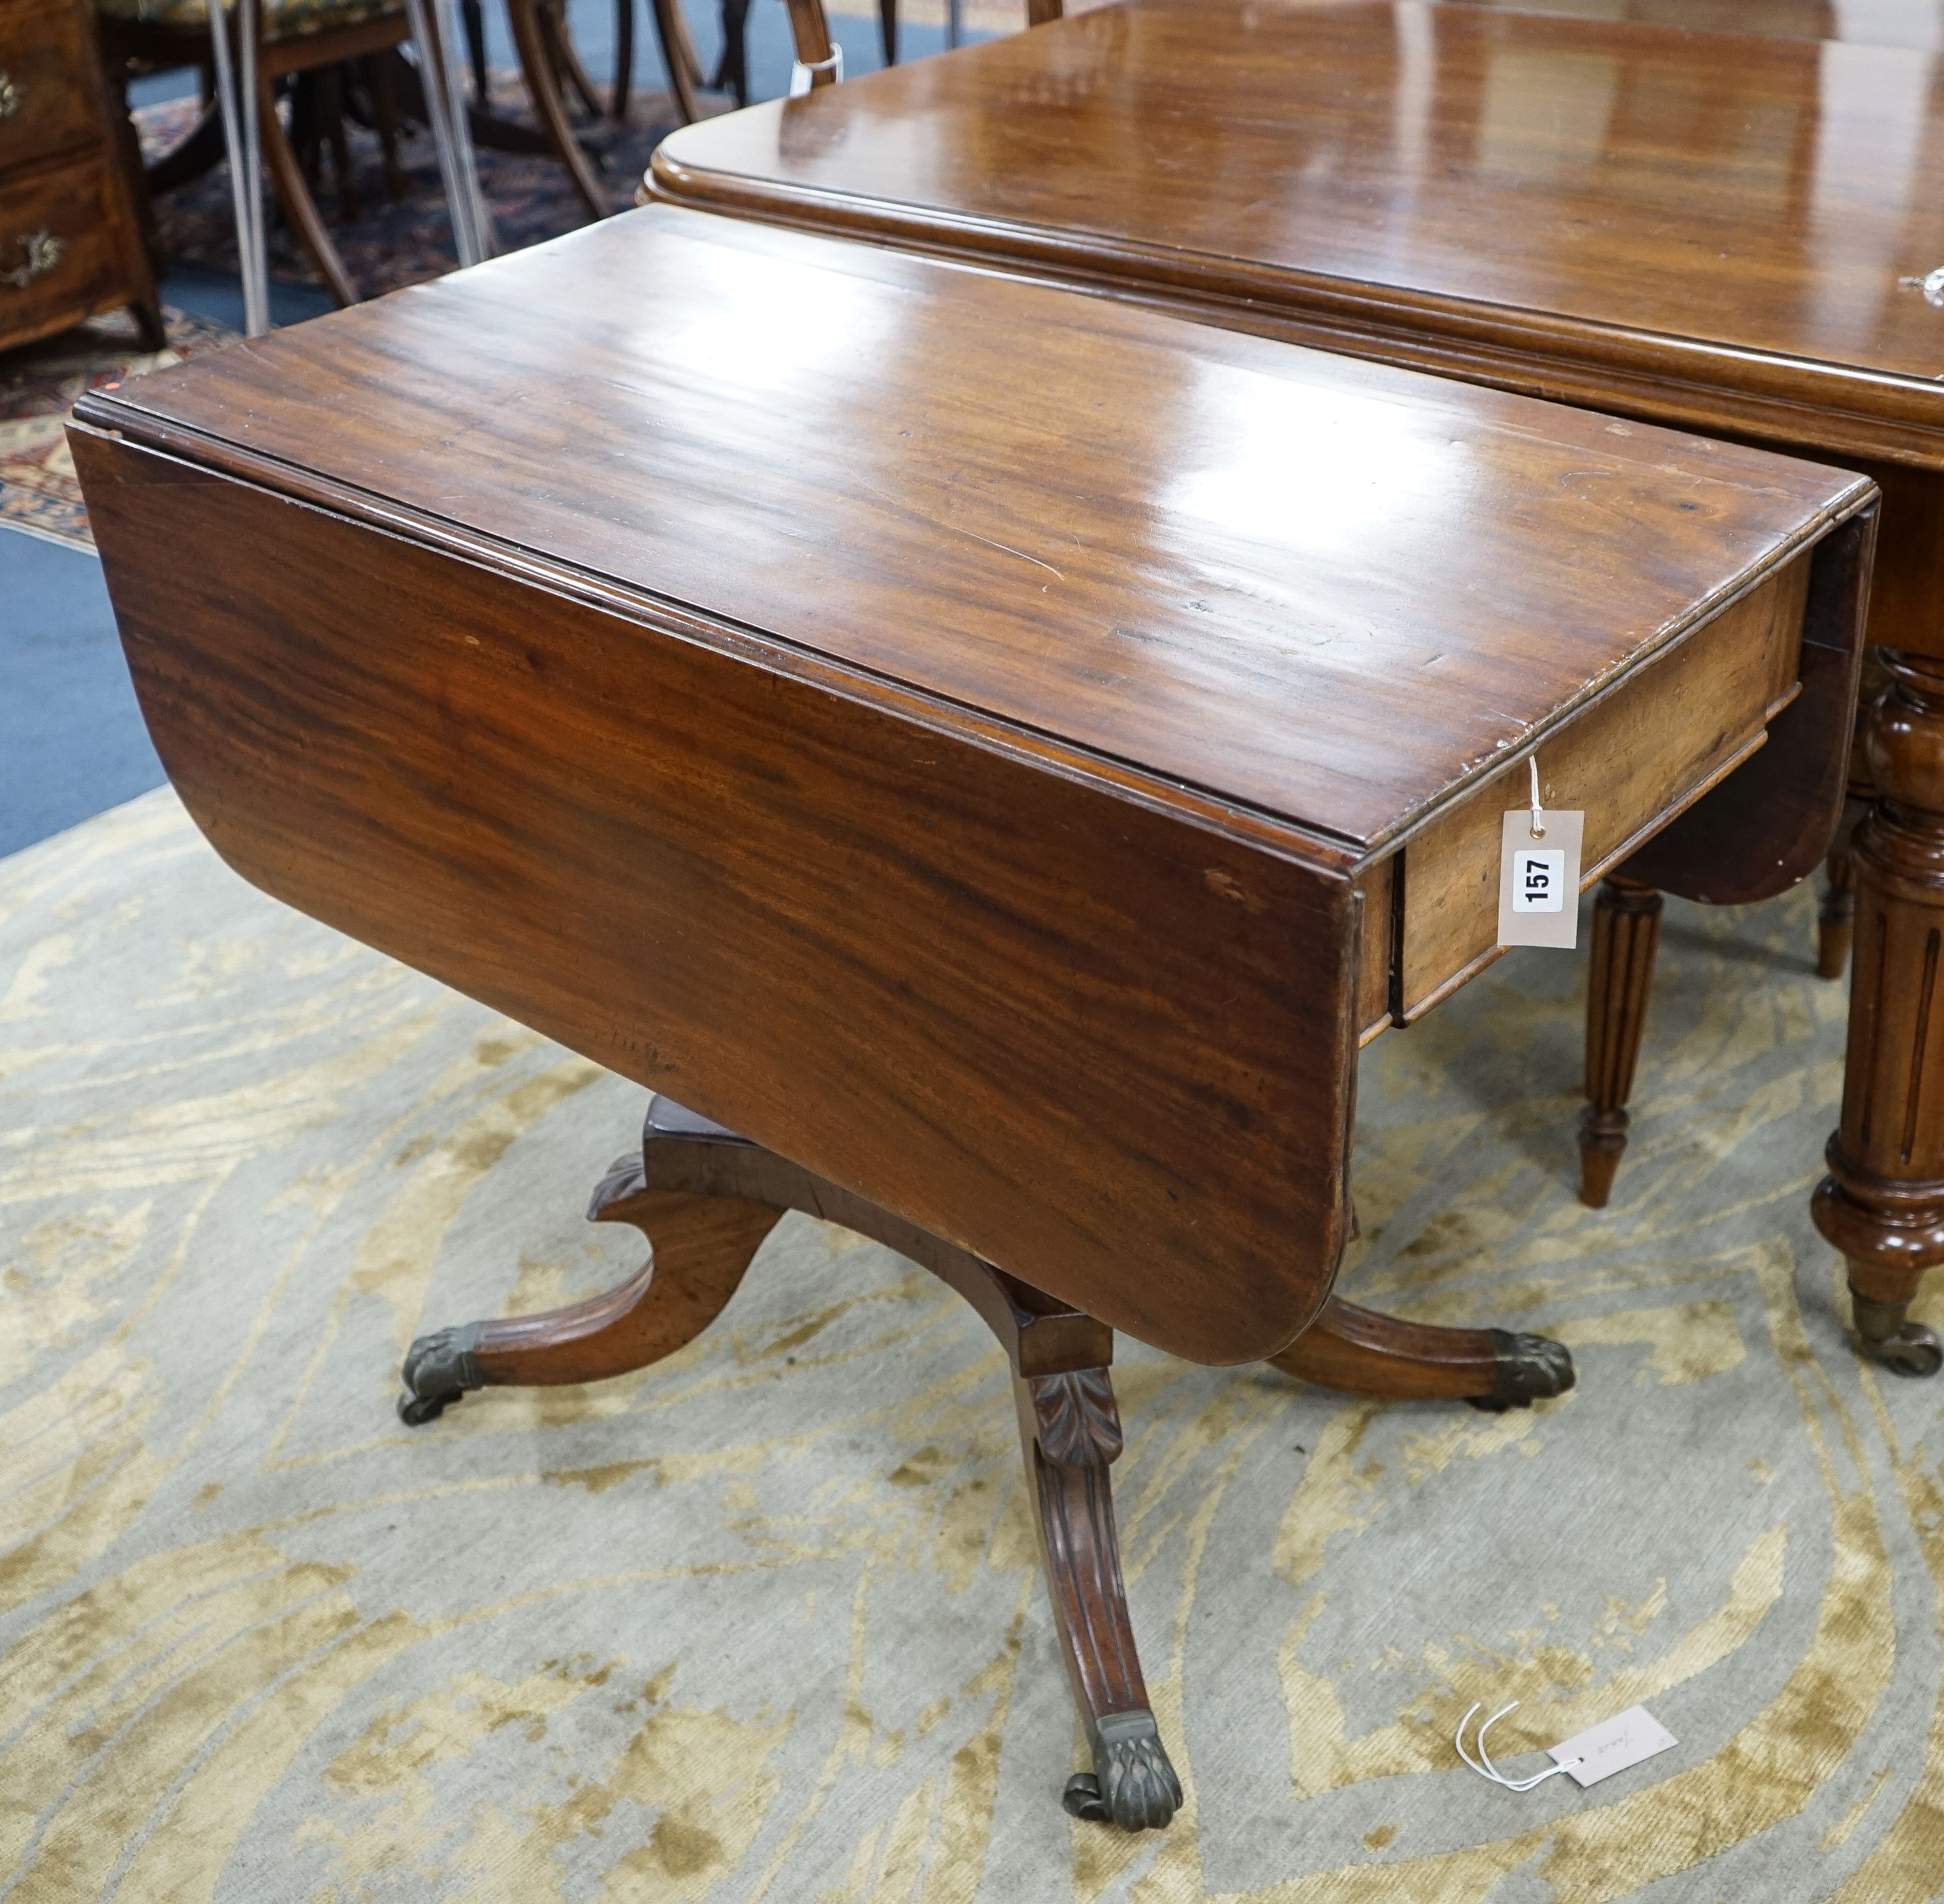 A Regency mahogany drop flap Pembroke breakfast table, width 90cm, depth 49cm, height 72cm